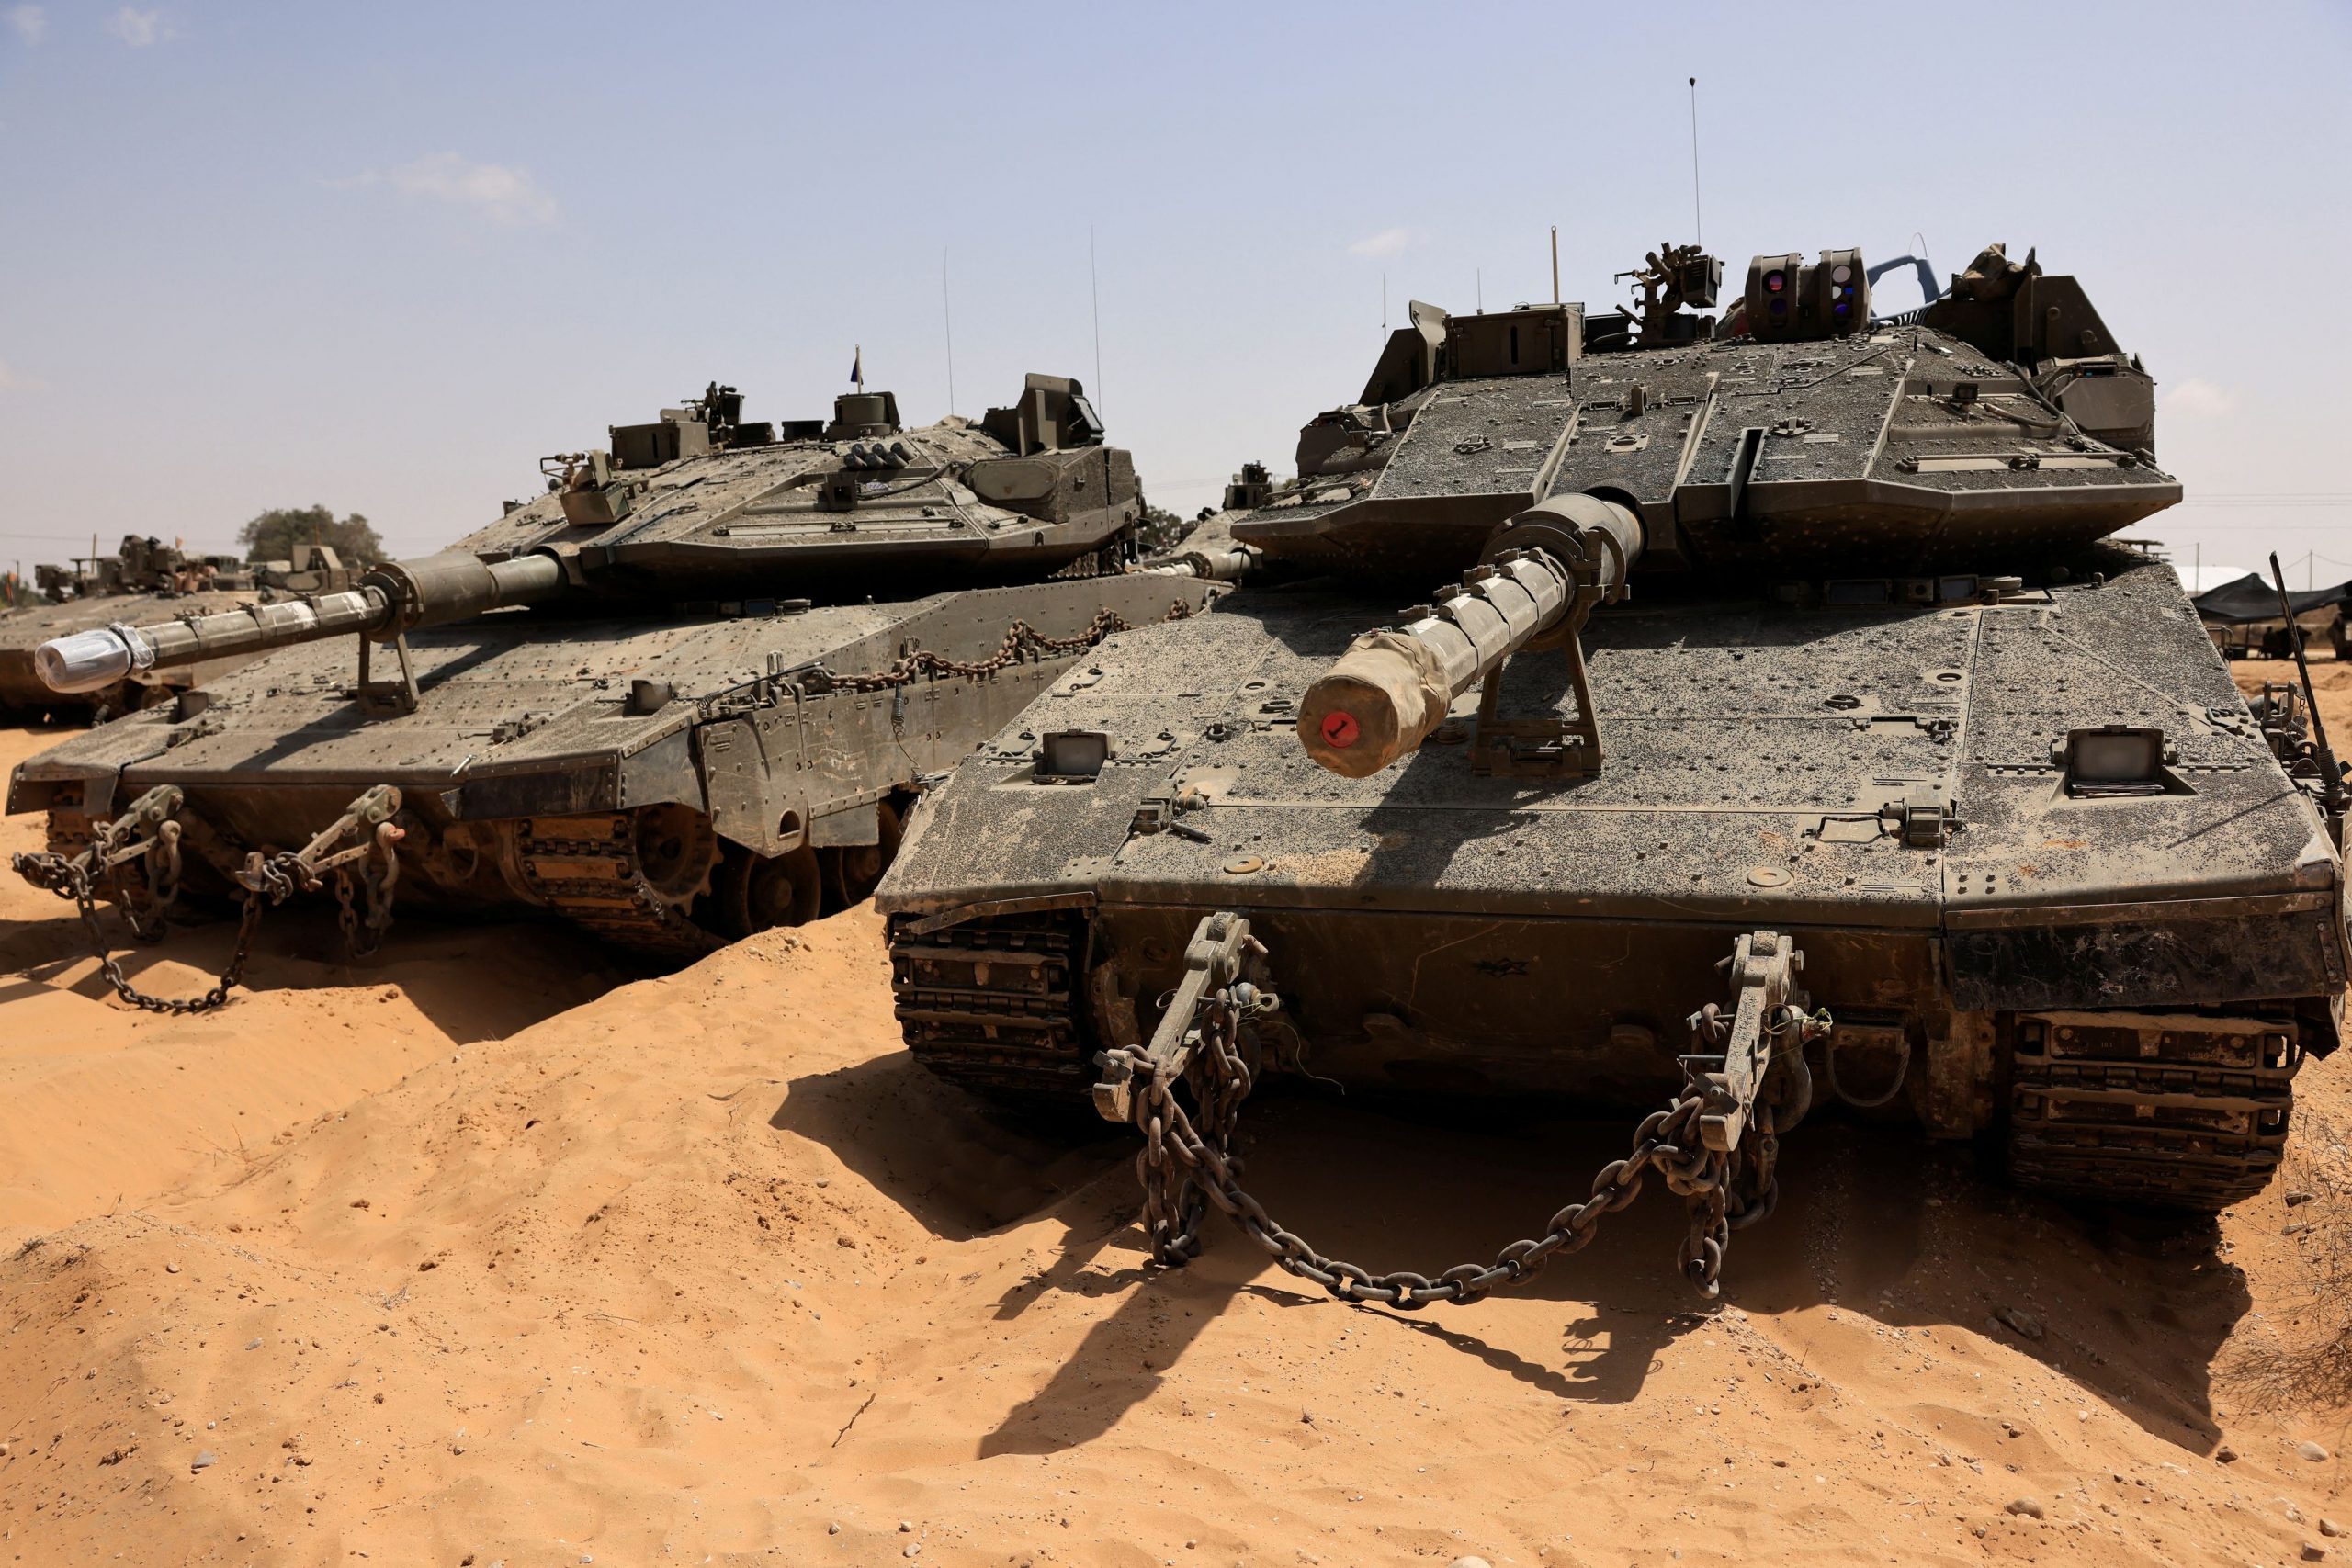 Ισραήλ: Ποιοι είναι οι βασικοί προμηθευτές όπλων της χώρας – Ποιοι έχουν σταματήσει τις εξαγωγές